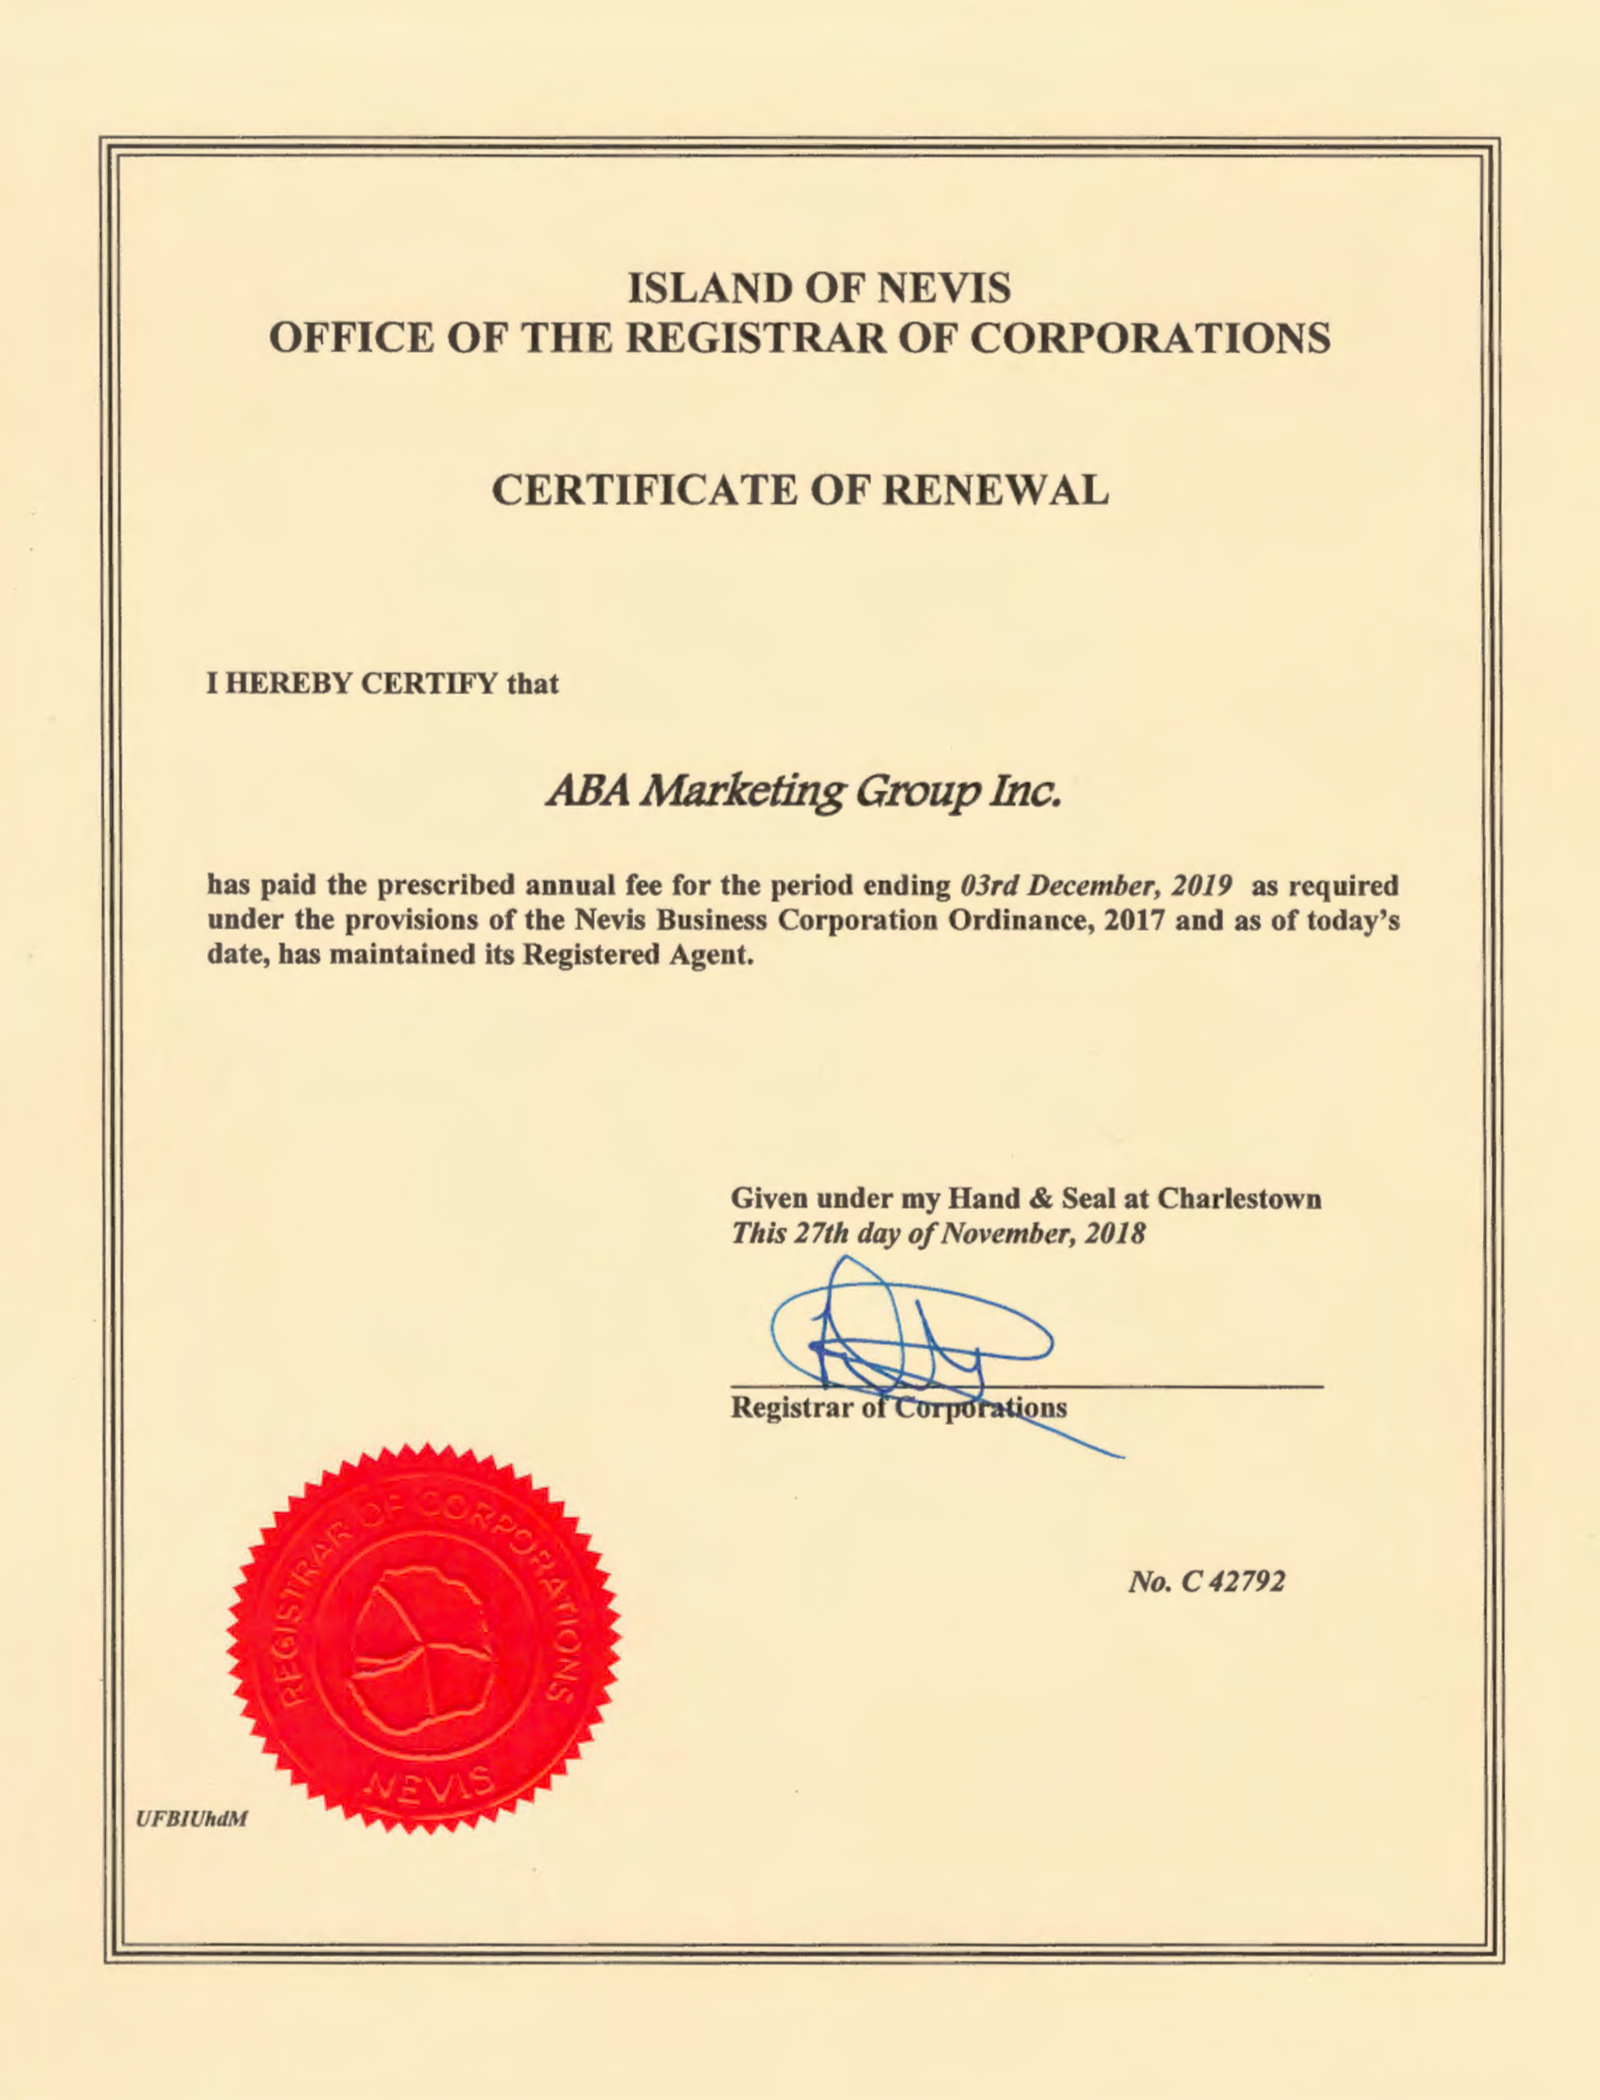 Сертификат продления регистрации — certificate of renewal — подтверждает, что компания ABA Marketing зарегистрирована по стандарту Nevis business corporation ordinance 2017 и что она продлила регистрацию до указанной в документе даты — в данном случае 3 декабря 2019 года